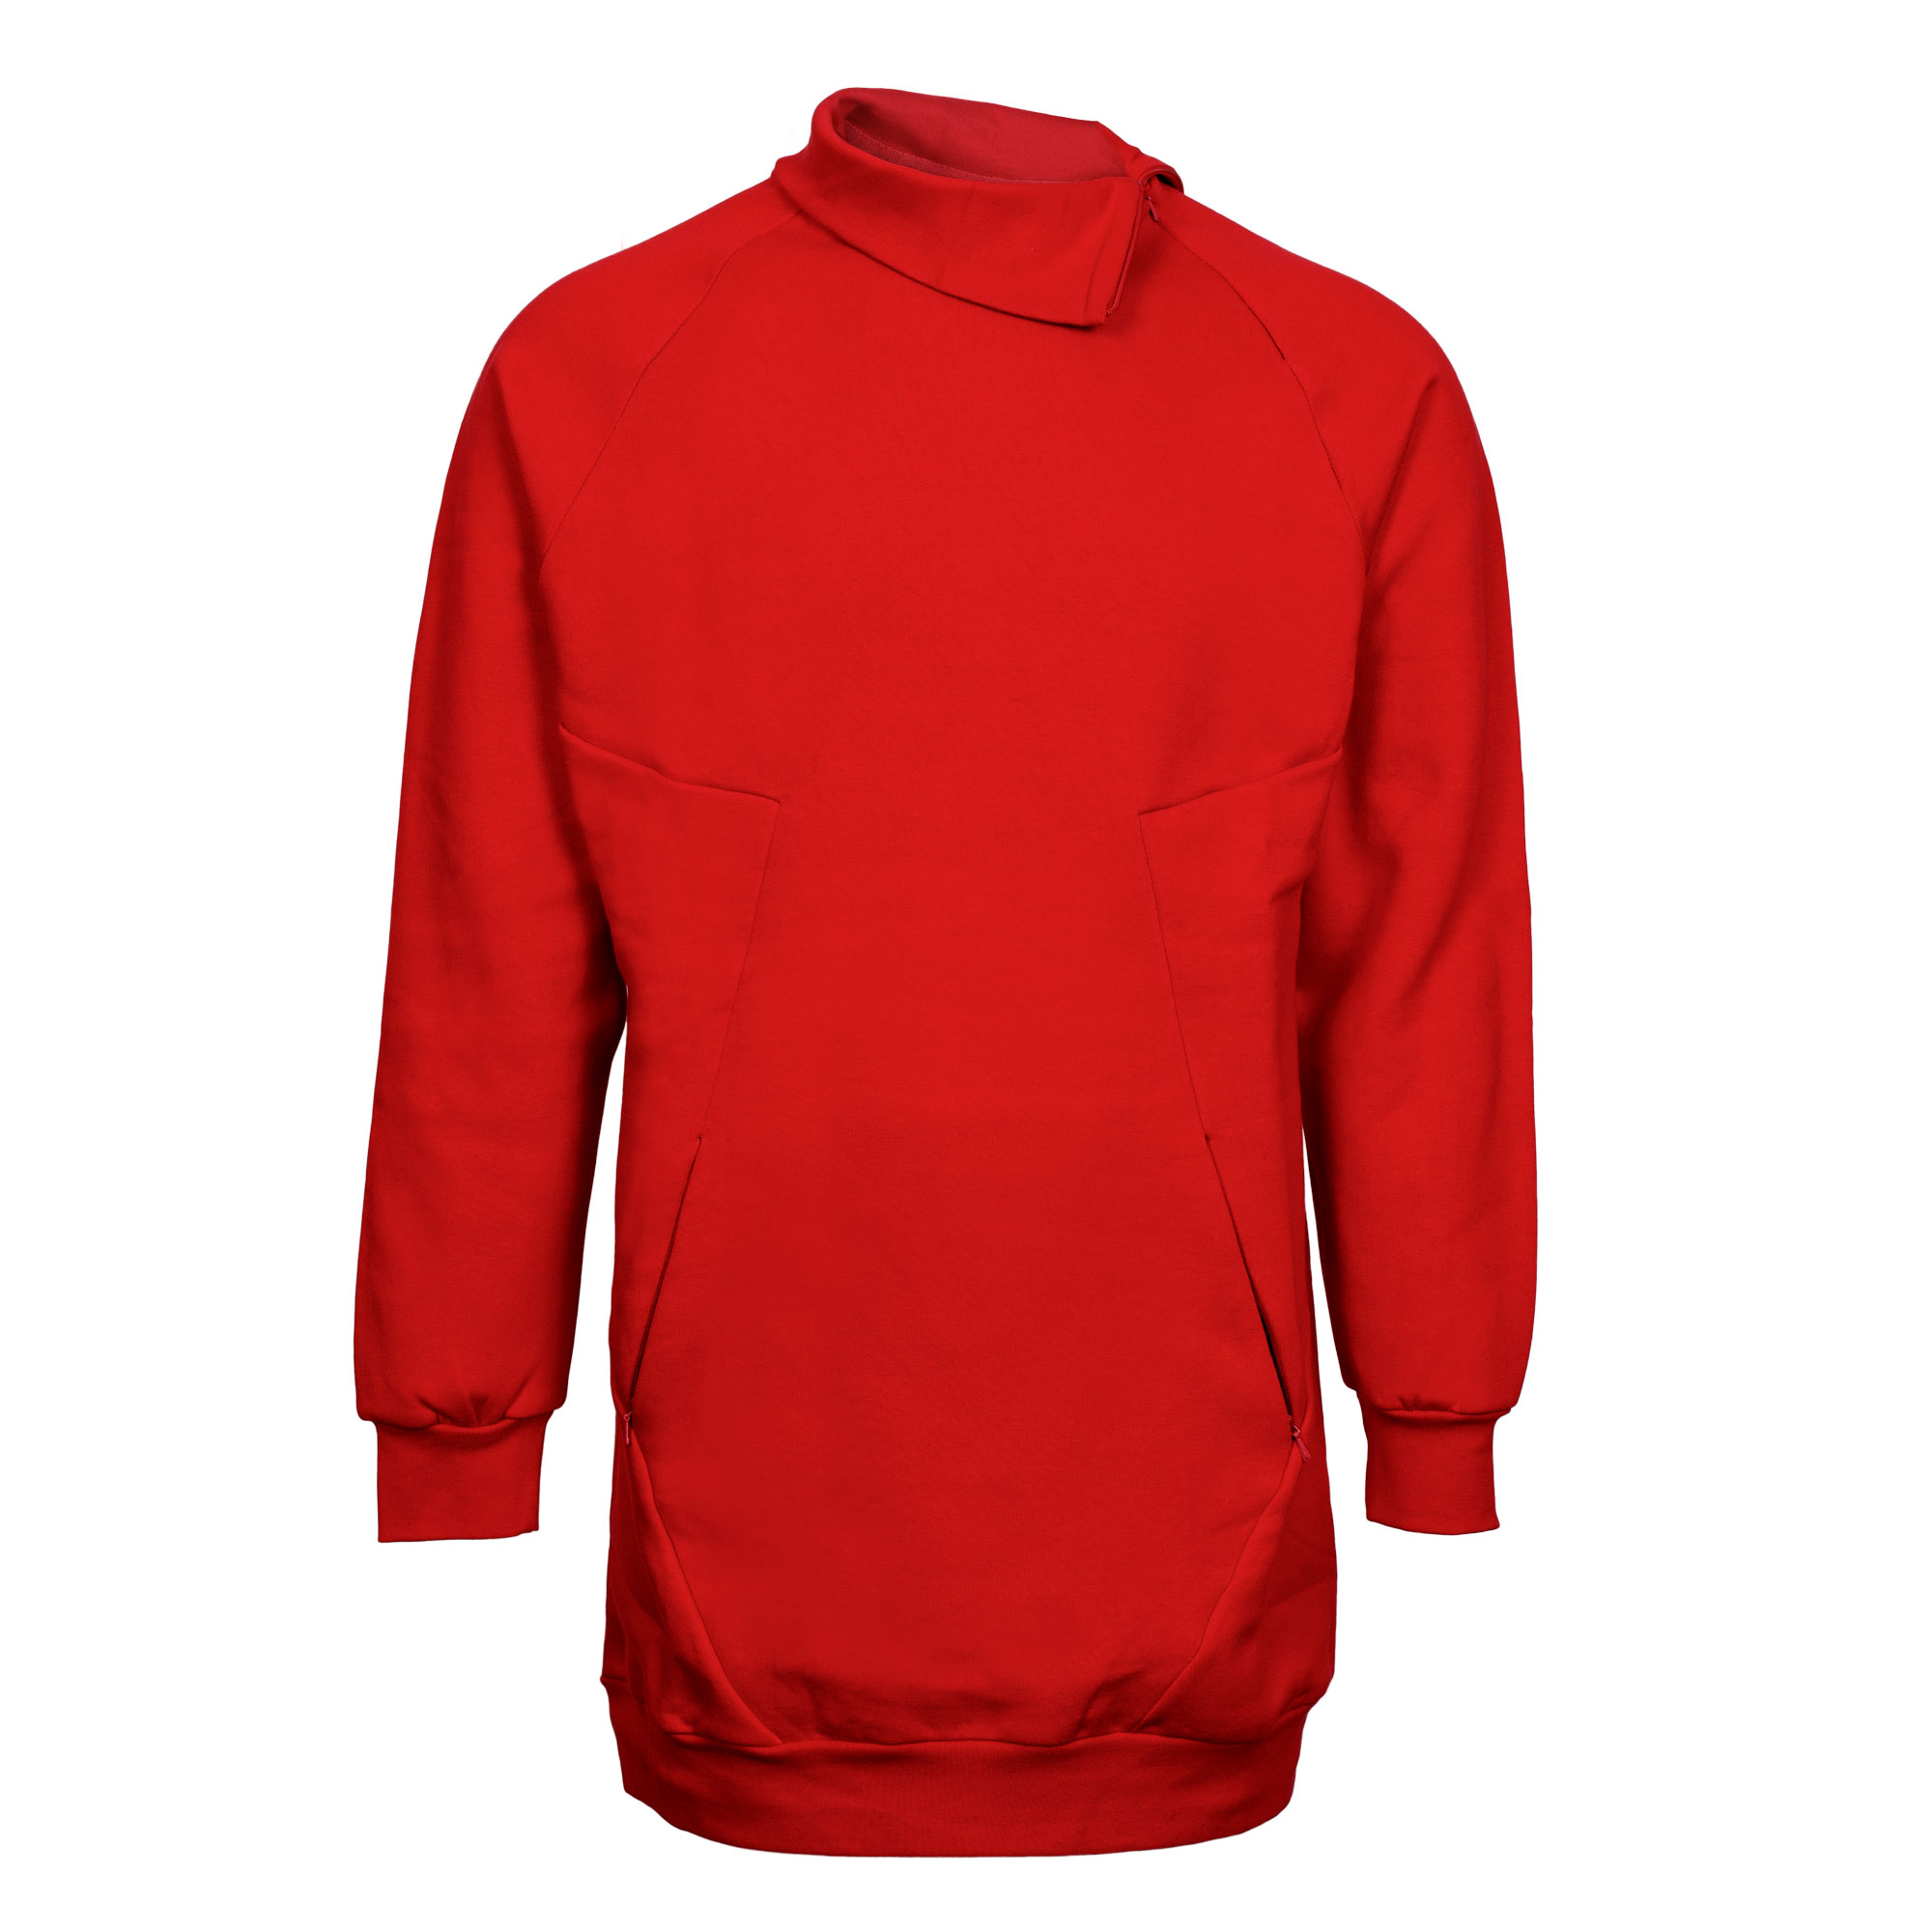 سویشرت ورزشی مردانه مدل SSM-012 رنگ قرمز